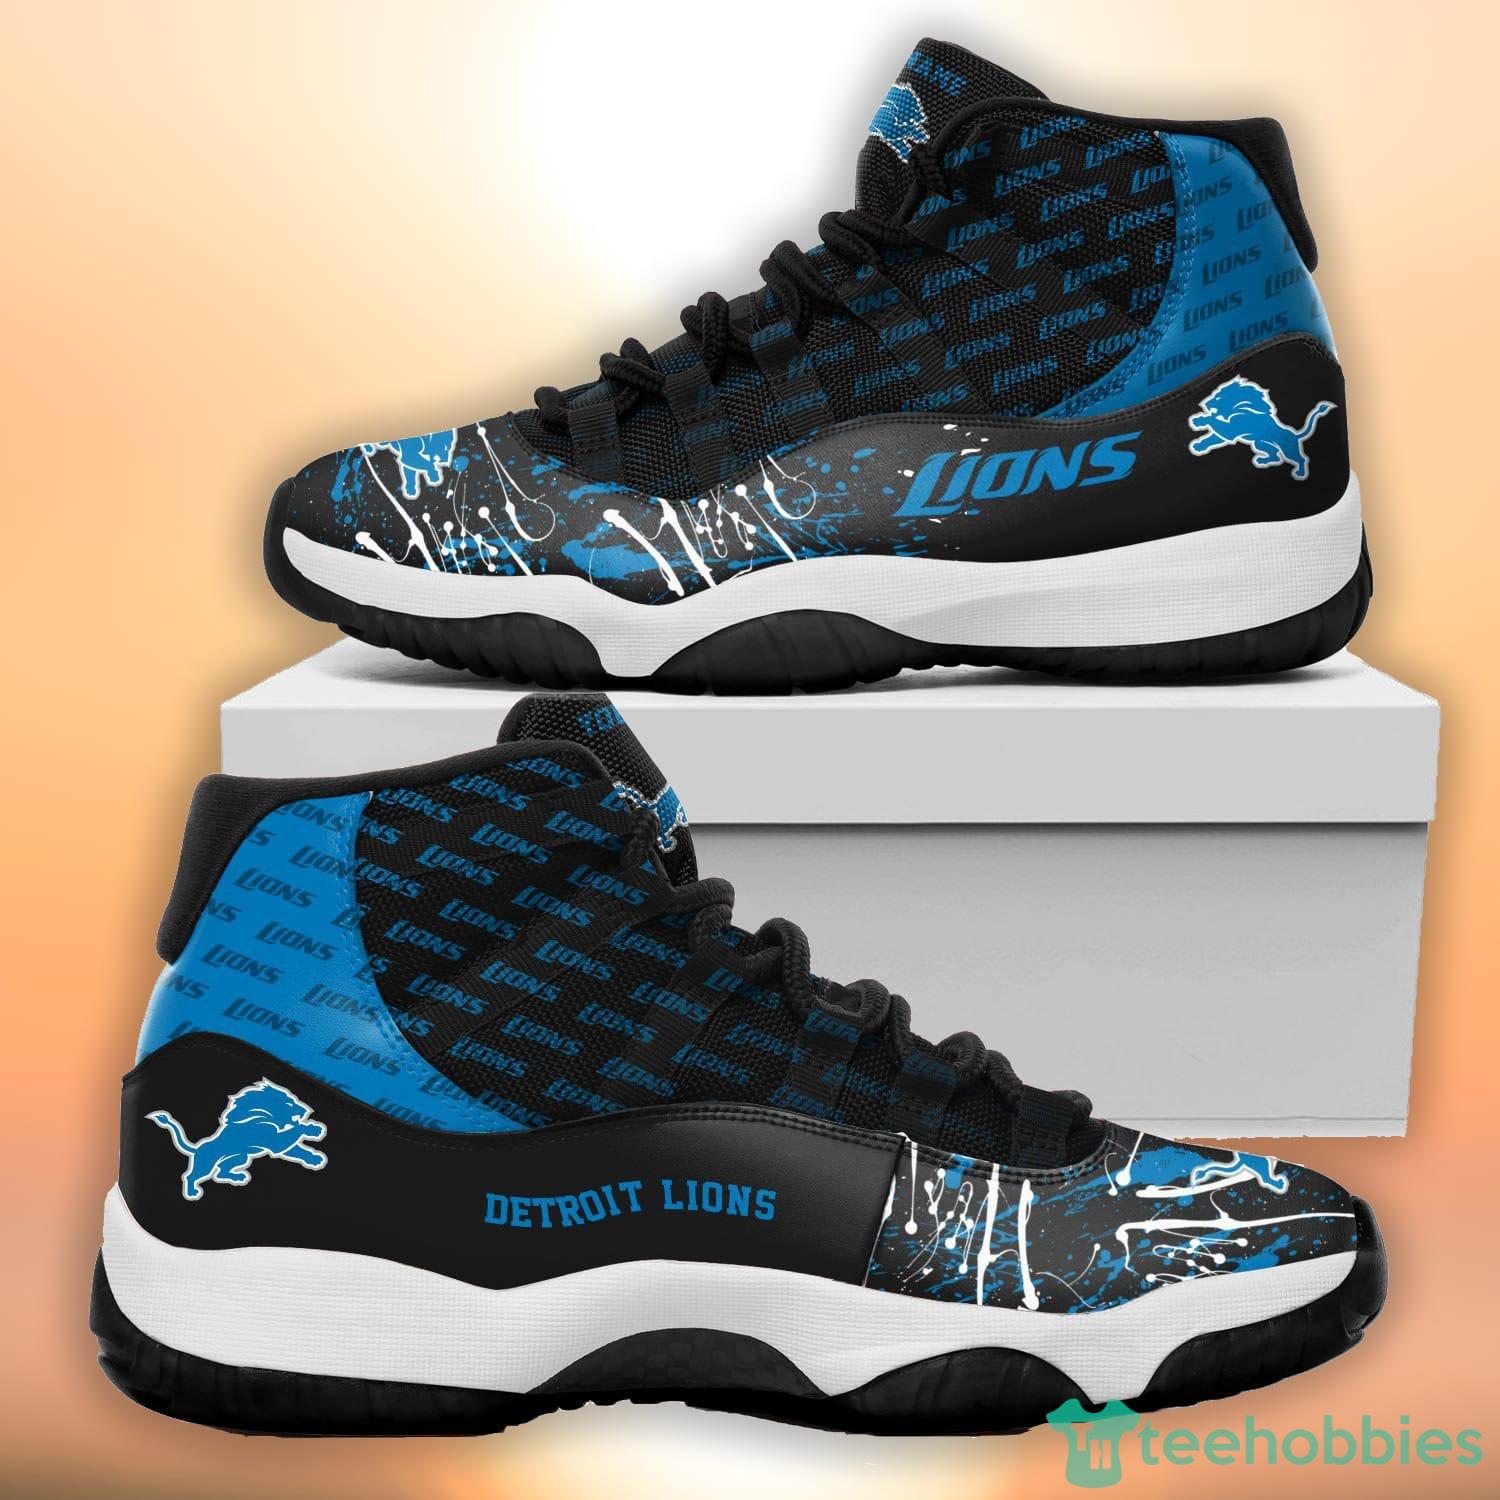 Custom Air Jordan 11 Shoes 